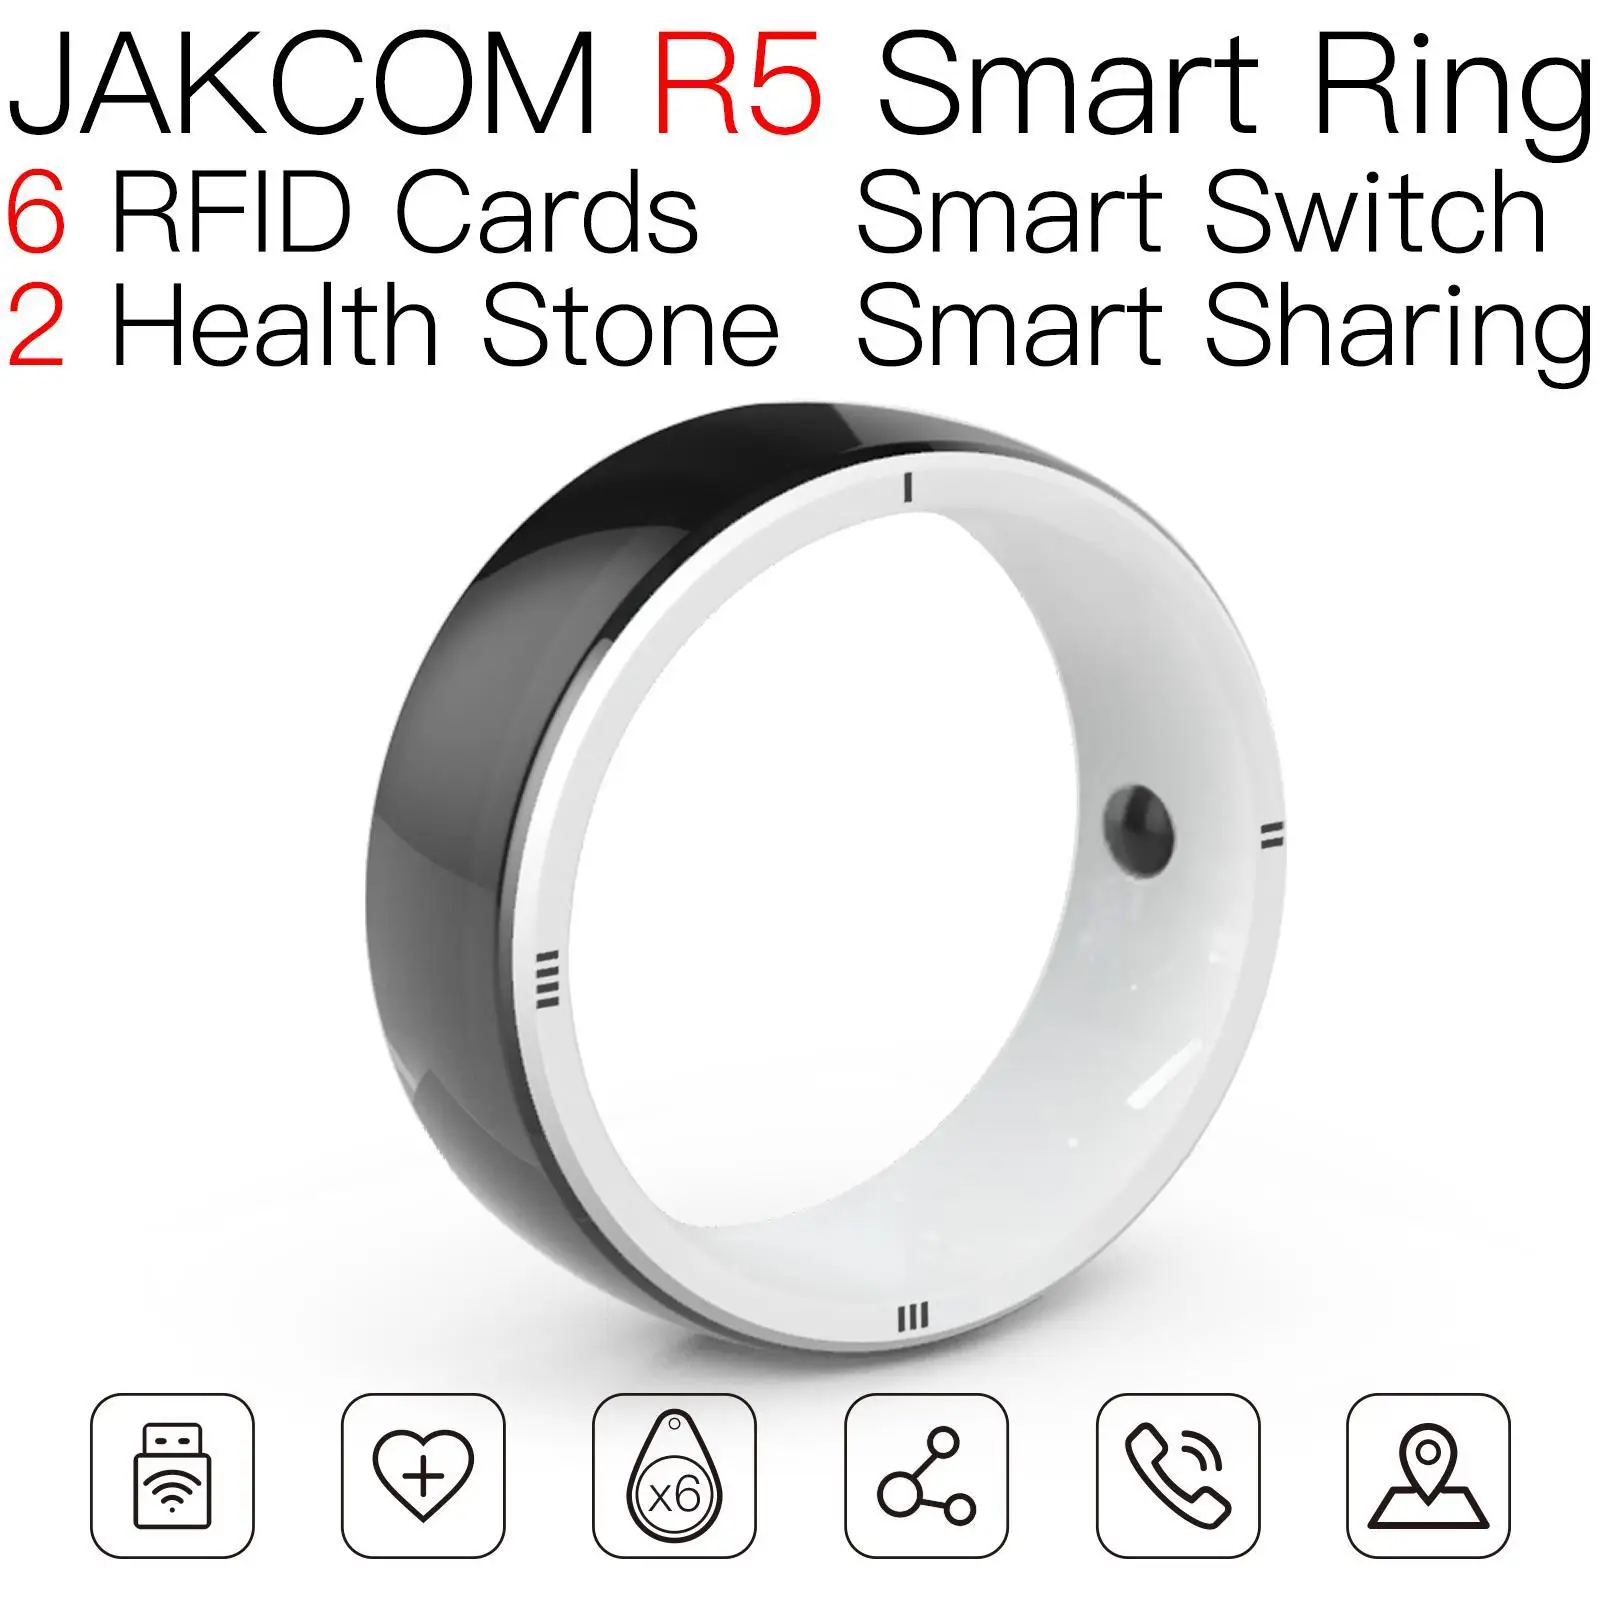 

JAKCOM R5, умное кольцо, новый продукт как rfid, мини-фотография, струйный чернильный набор, шлифовальные машины, крышка микрочипа, этикетка uhf